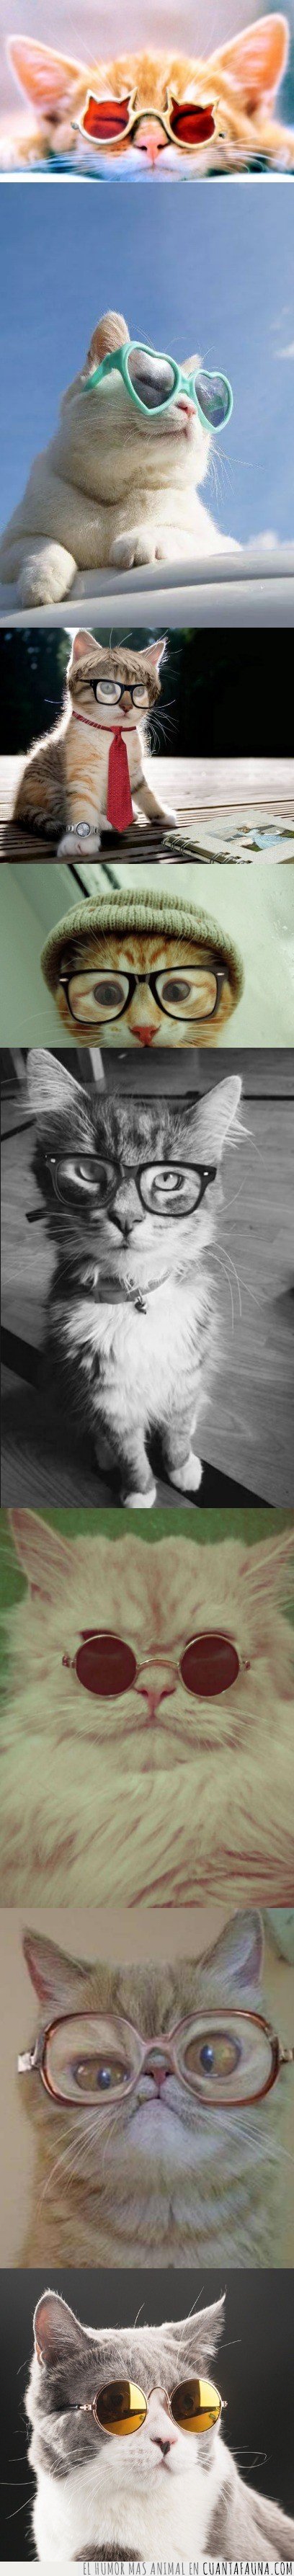 gato,gafas